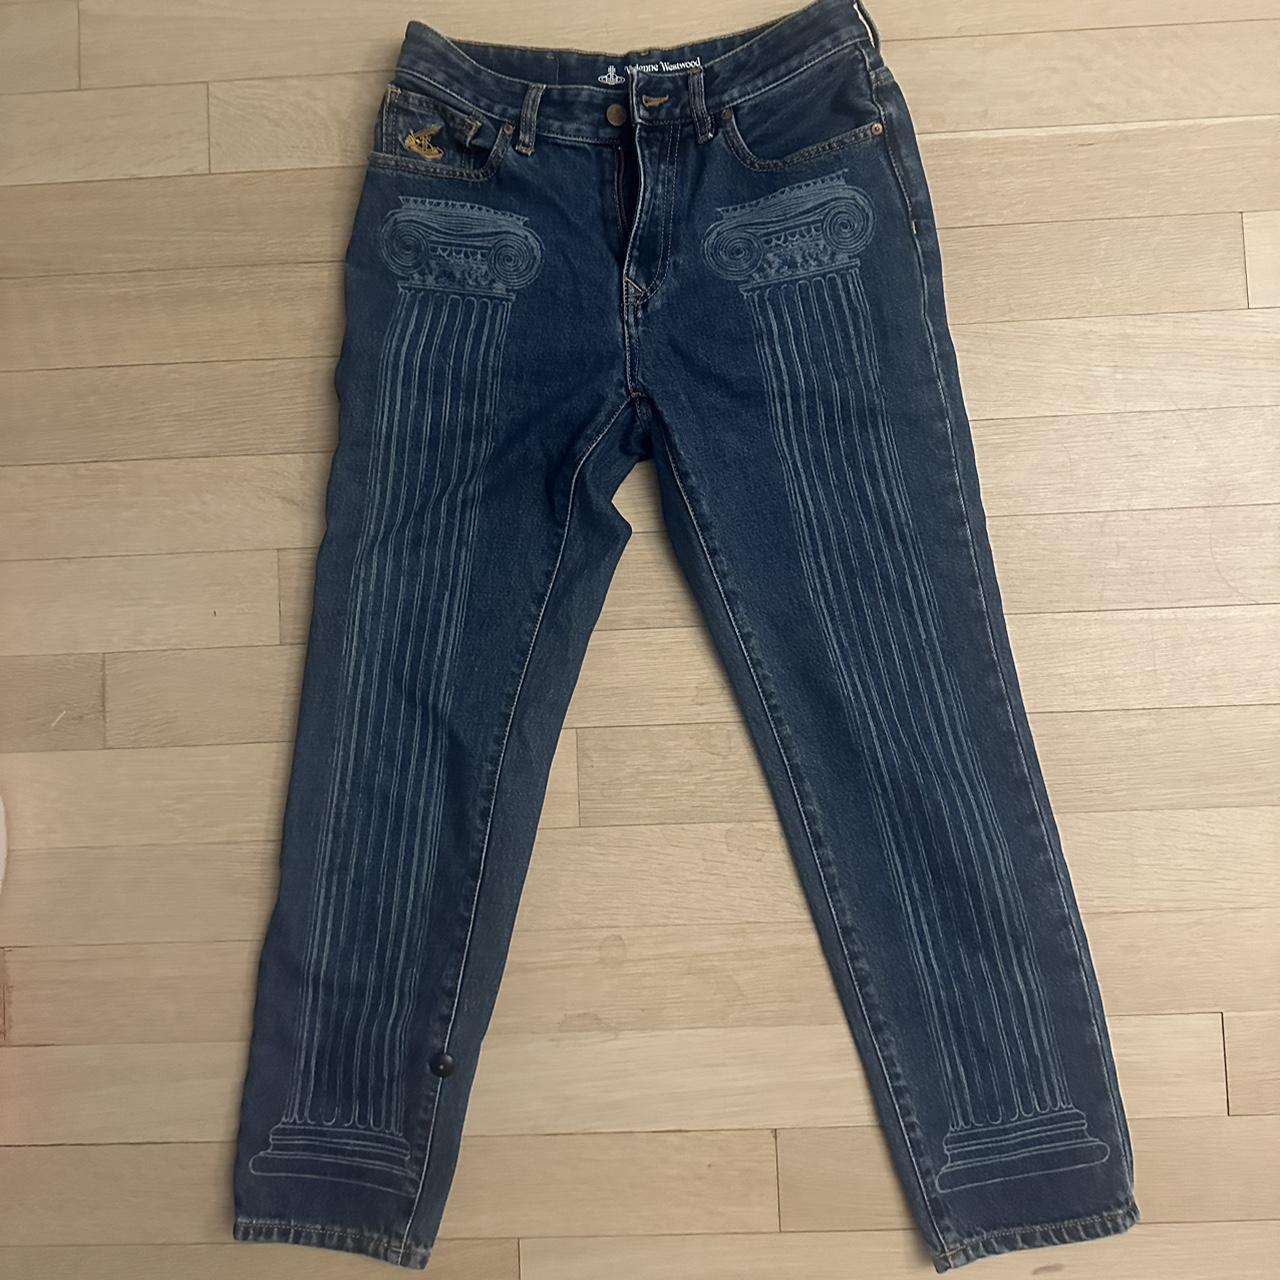 Vivienne Westwood jeans Fits size 26-27 - Depop